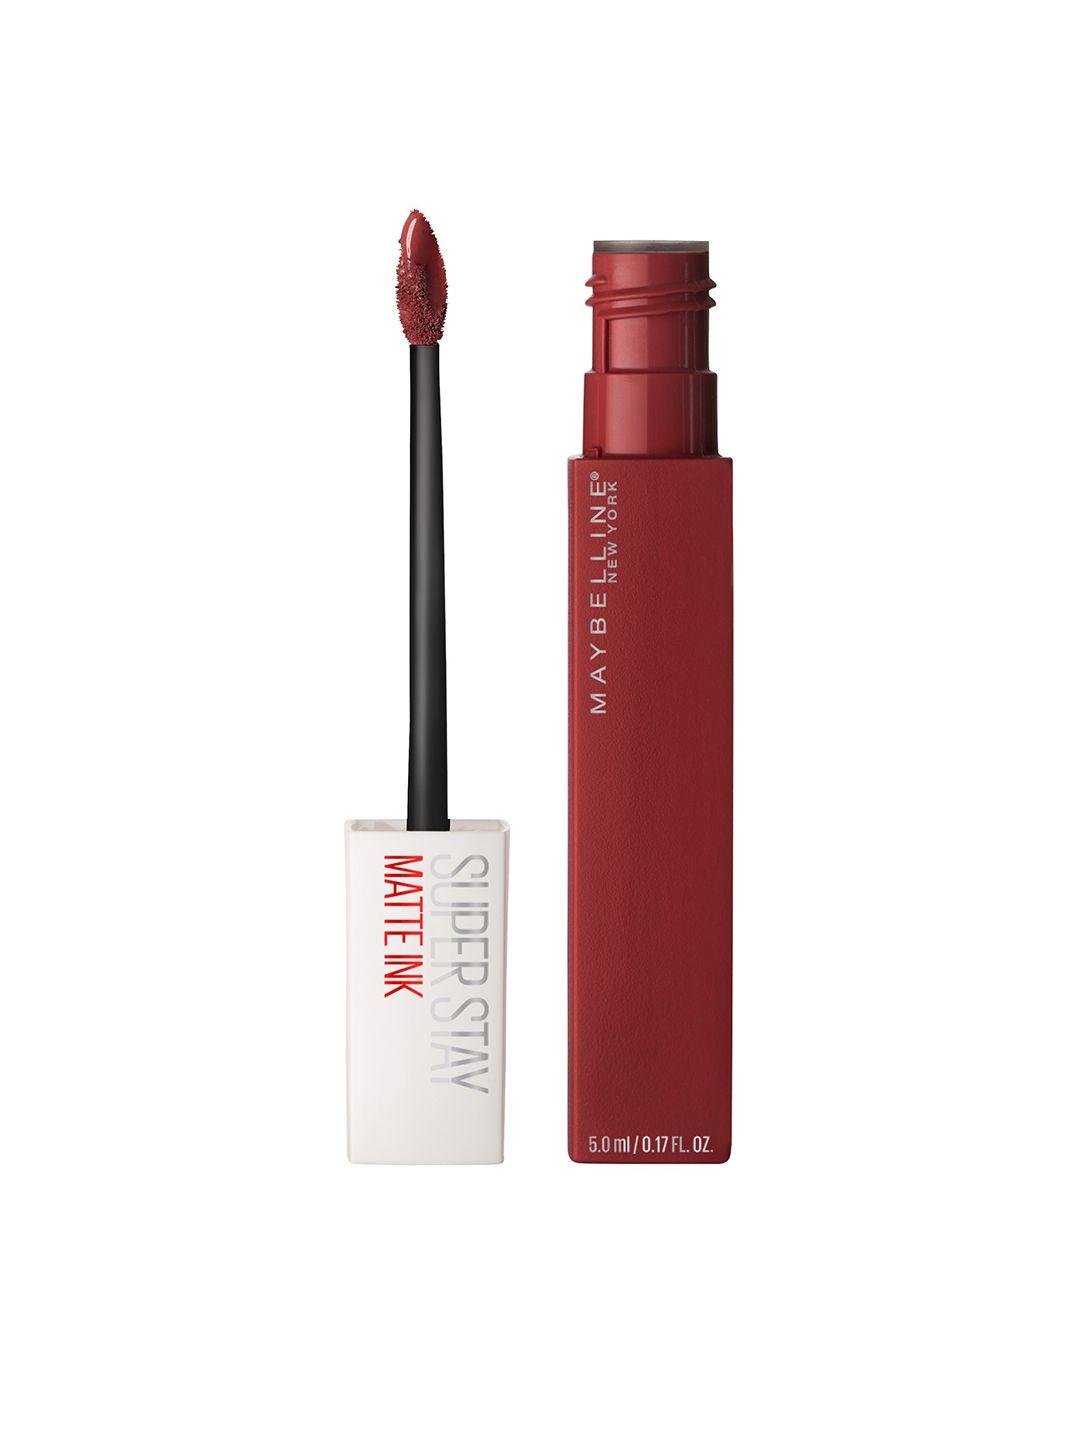 maybelline new york super stay matte ink liquid lipstick - voyager 50